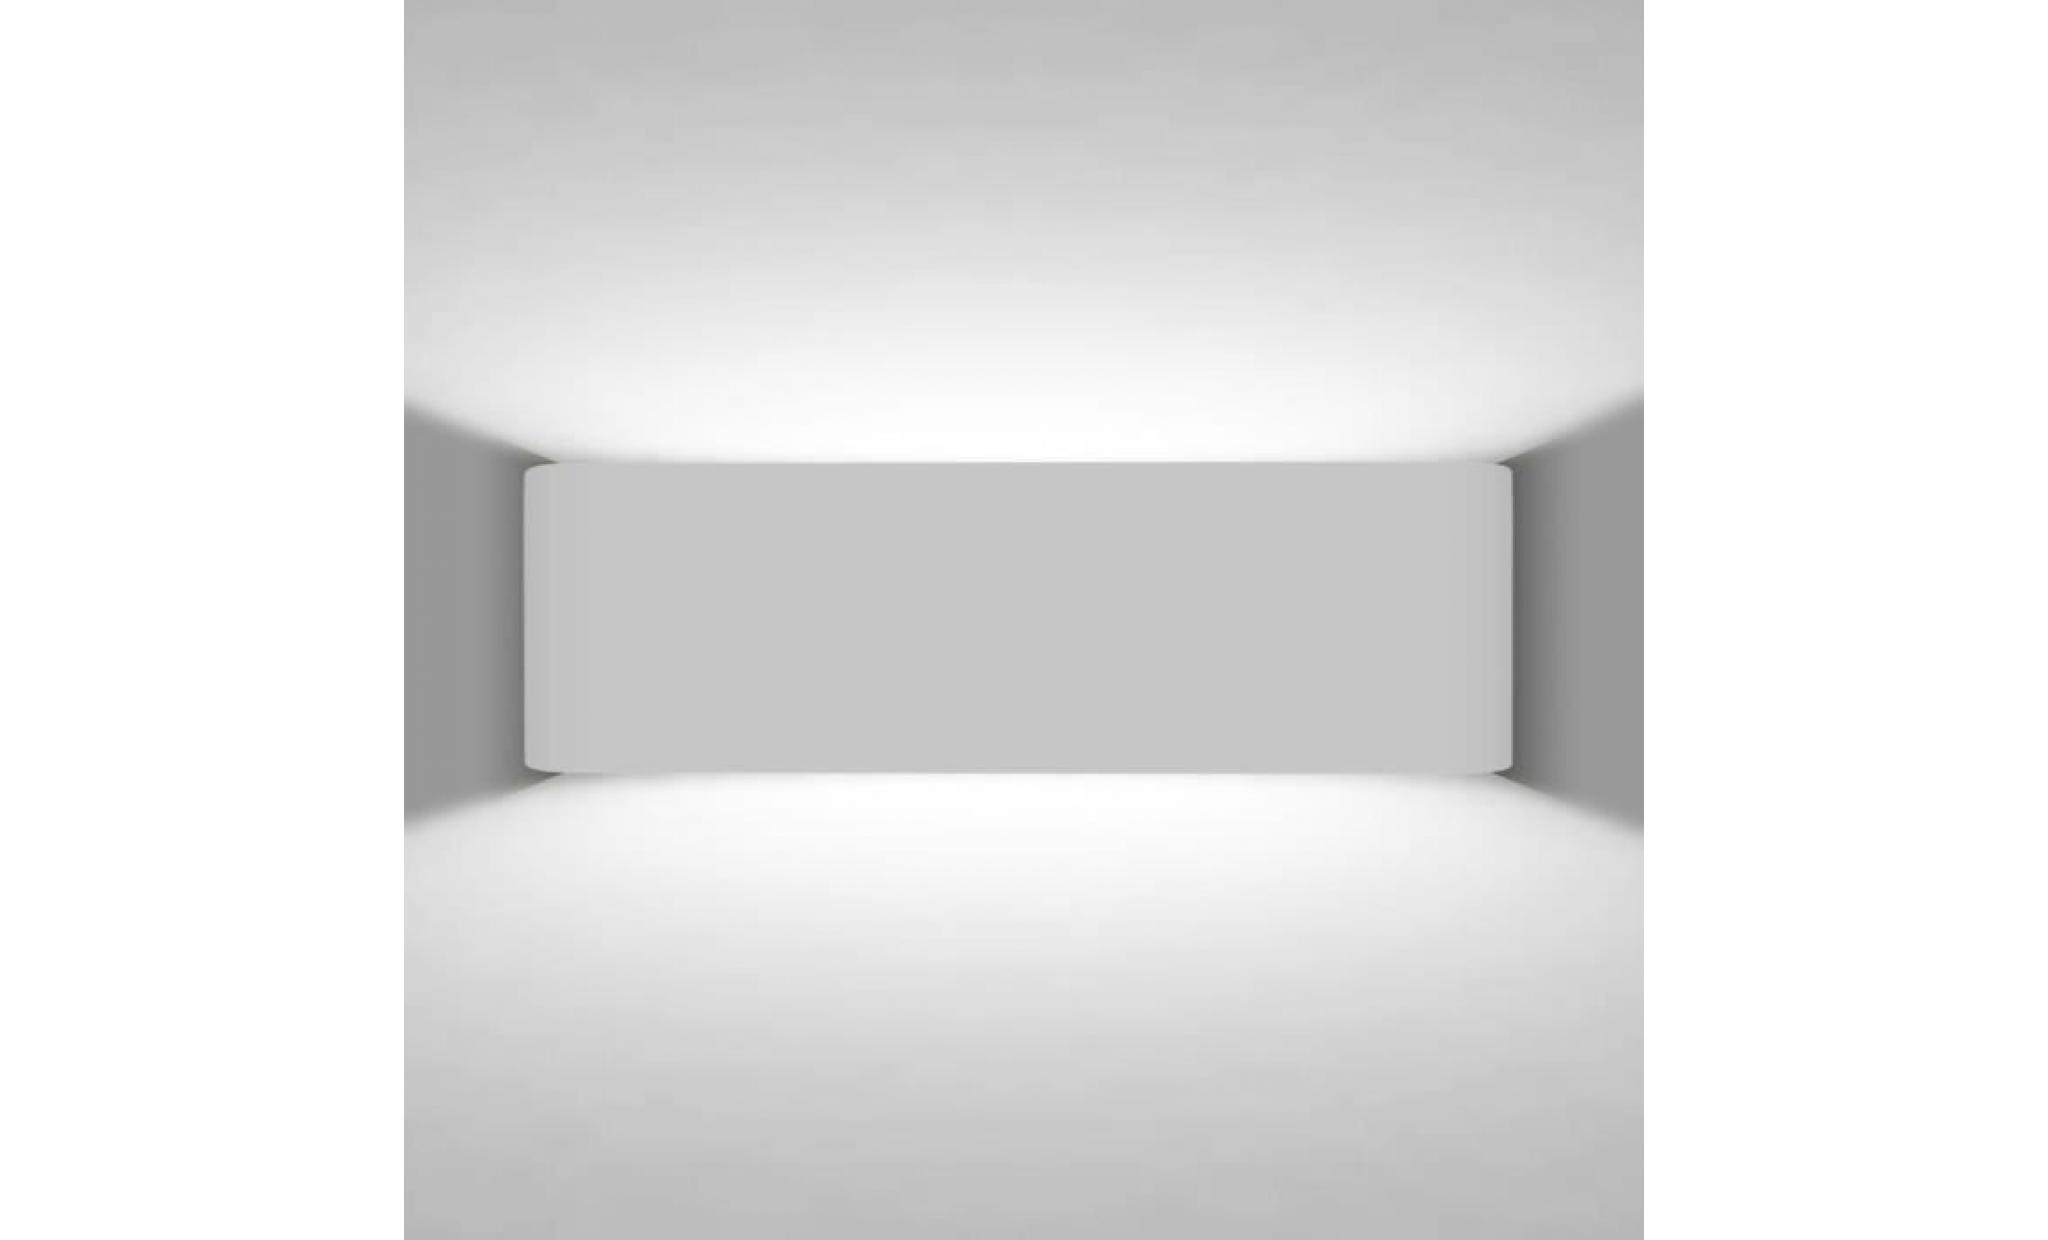 7w lampe applique murale led mural super lumineux lampe lumière blanc 6000k pour salle de bain miroir [classe énergétique a+++] pas cher